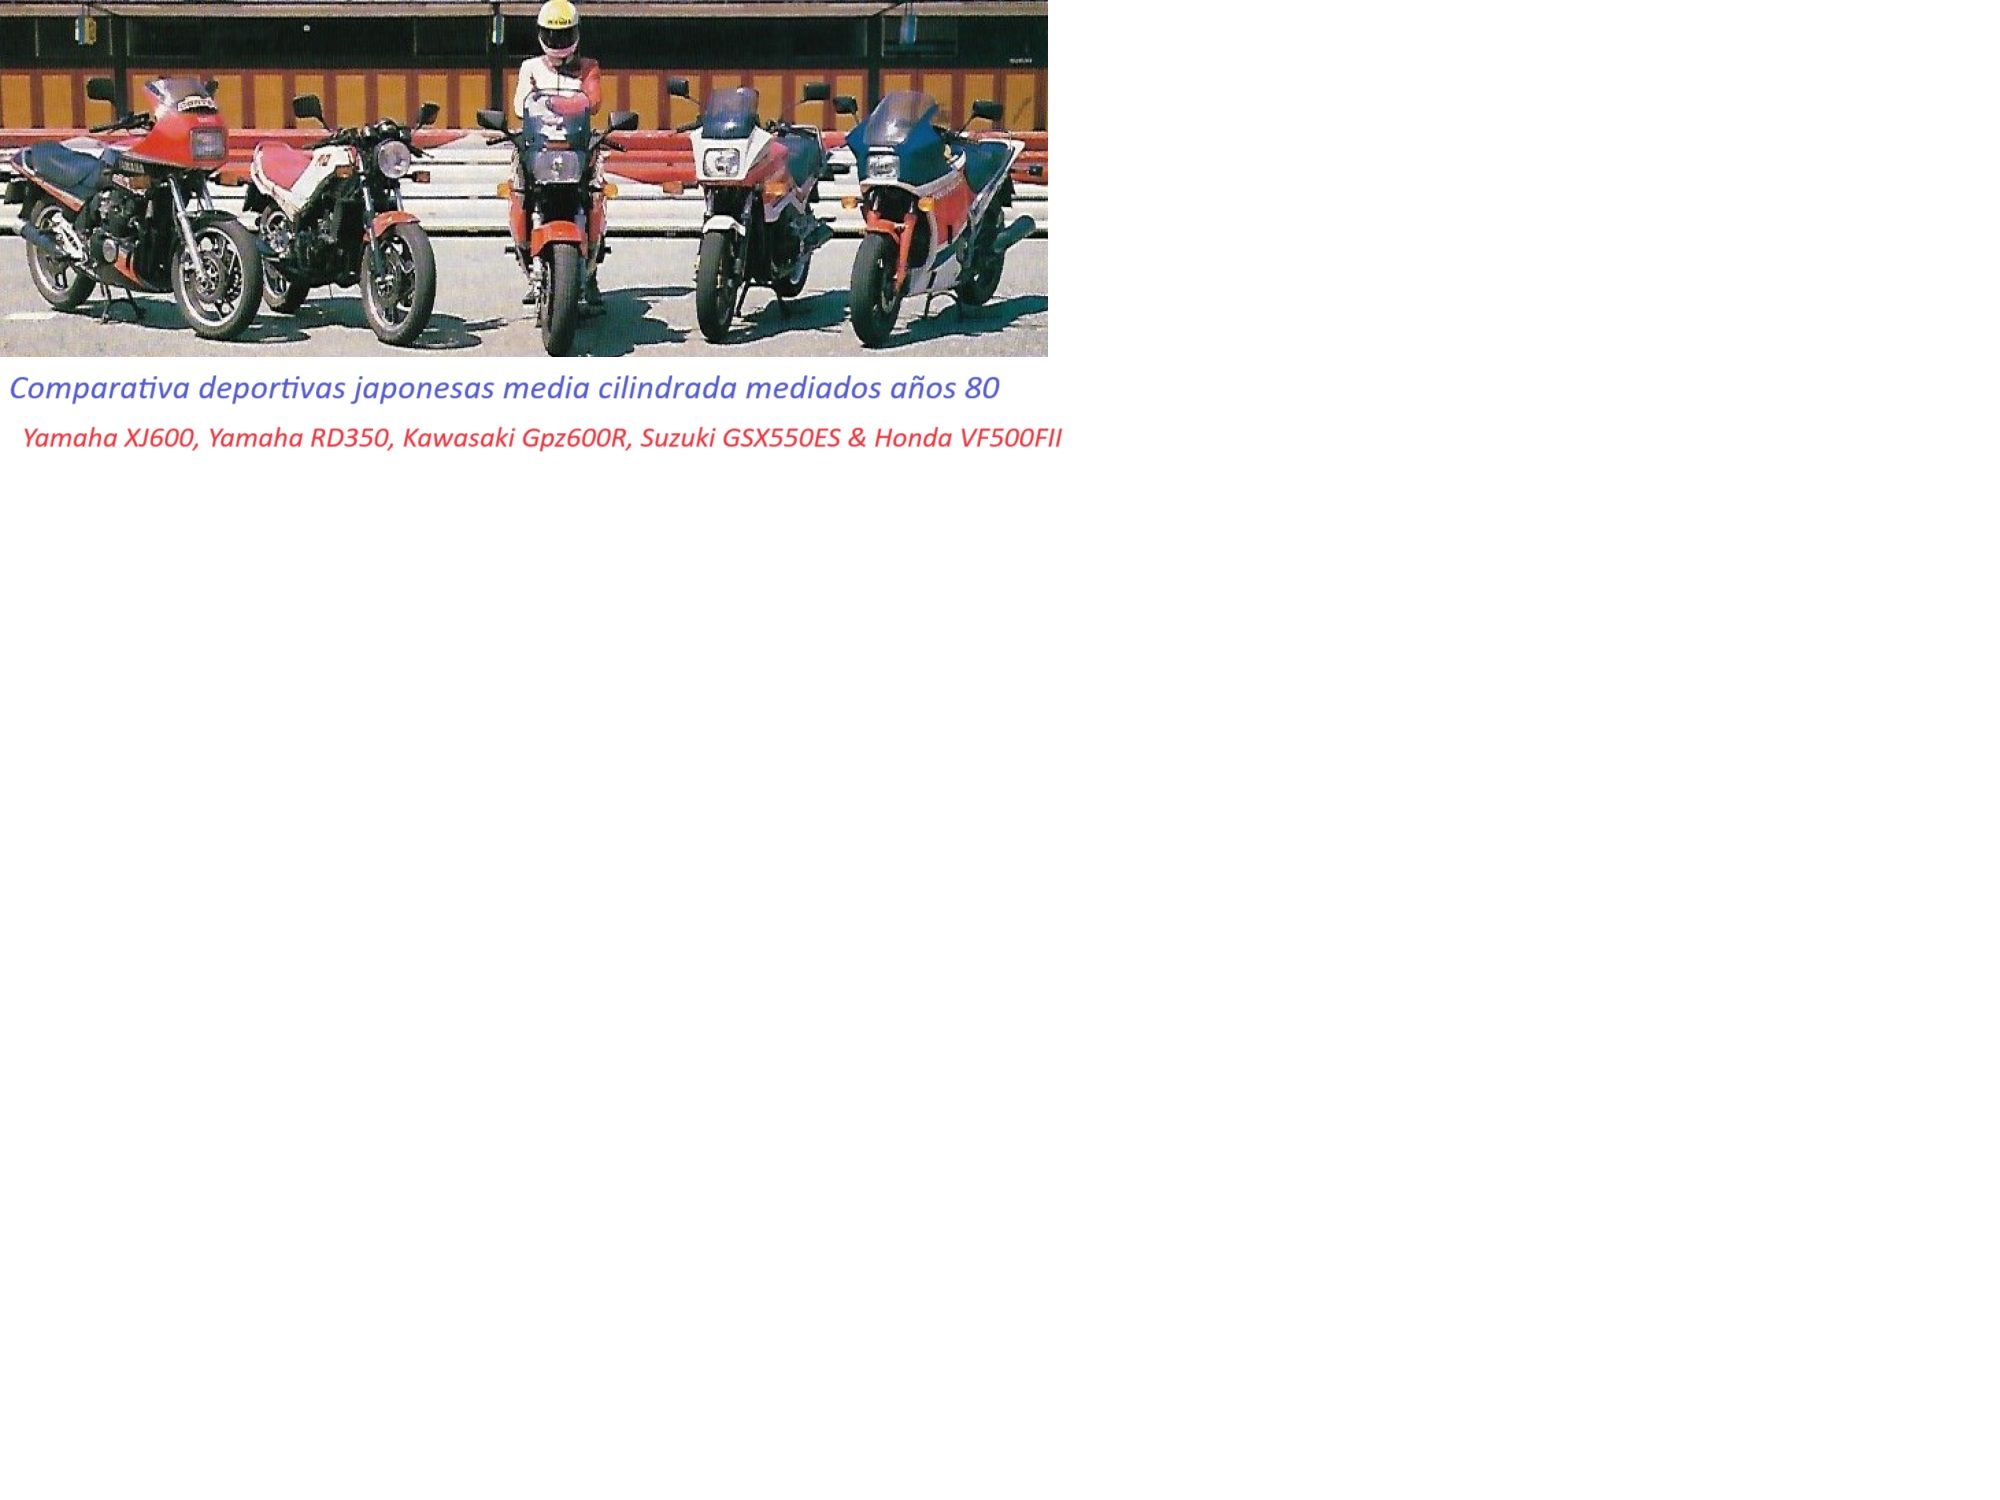 Comparativa deportivas media cilindrada años 80 Motociclismo n913 1985